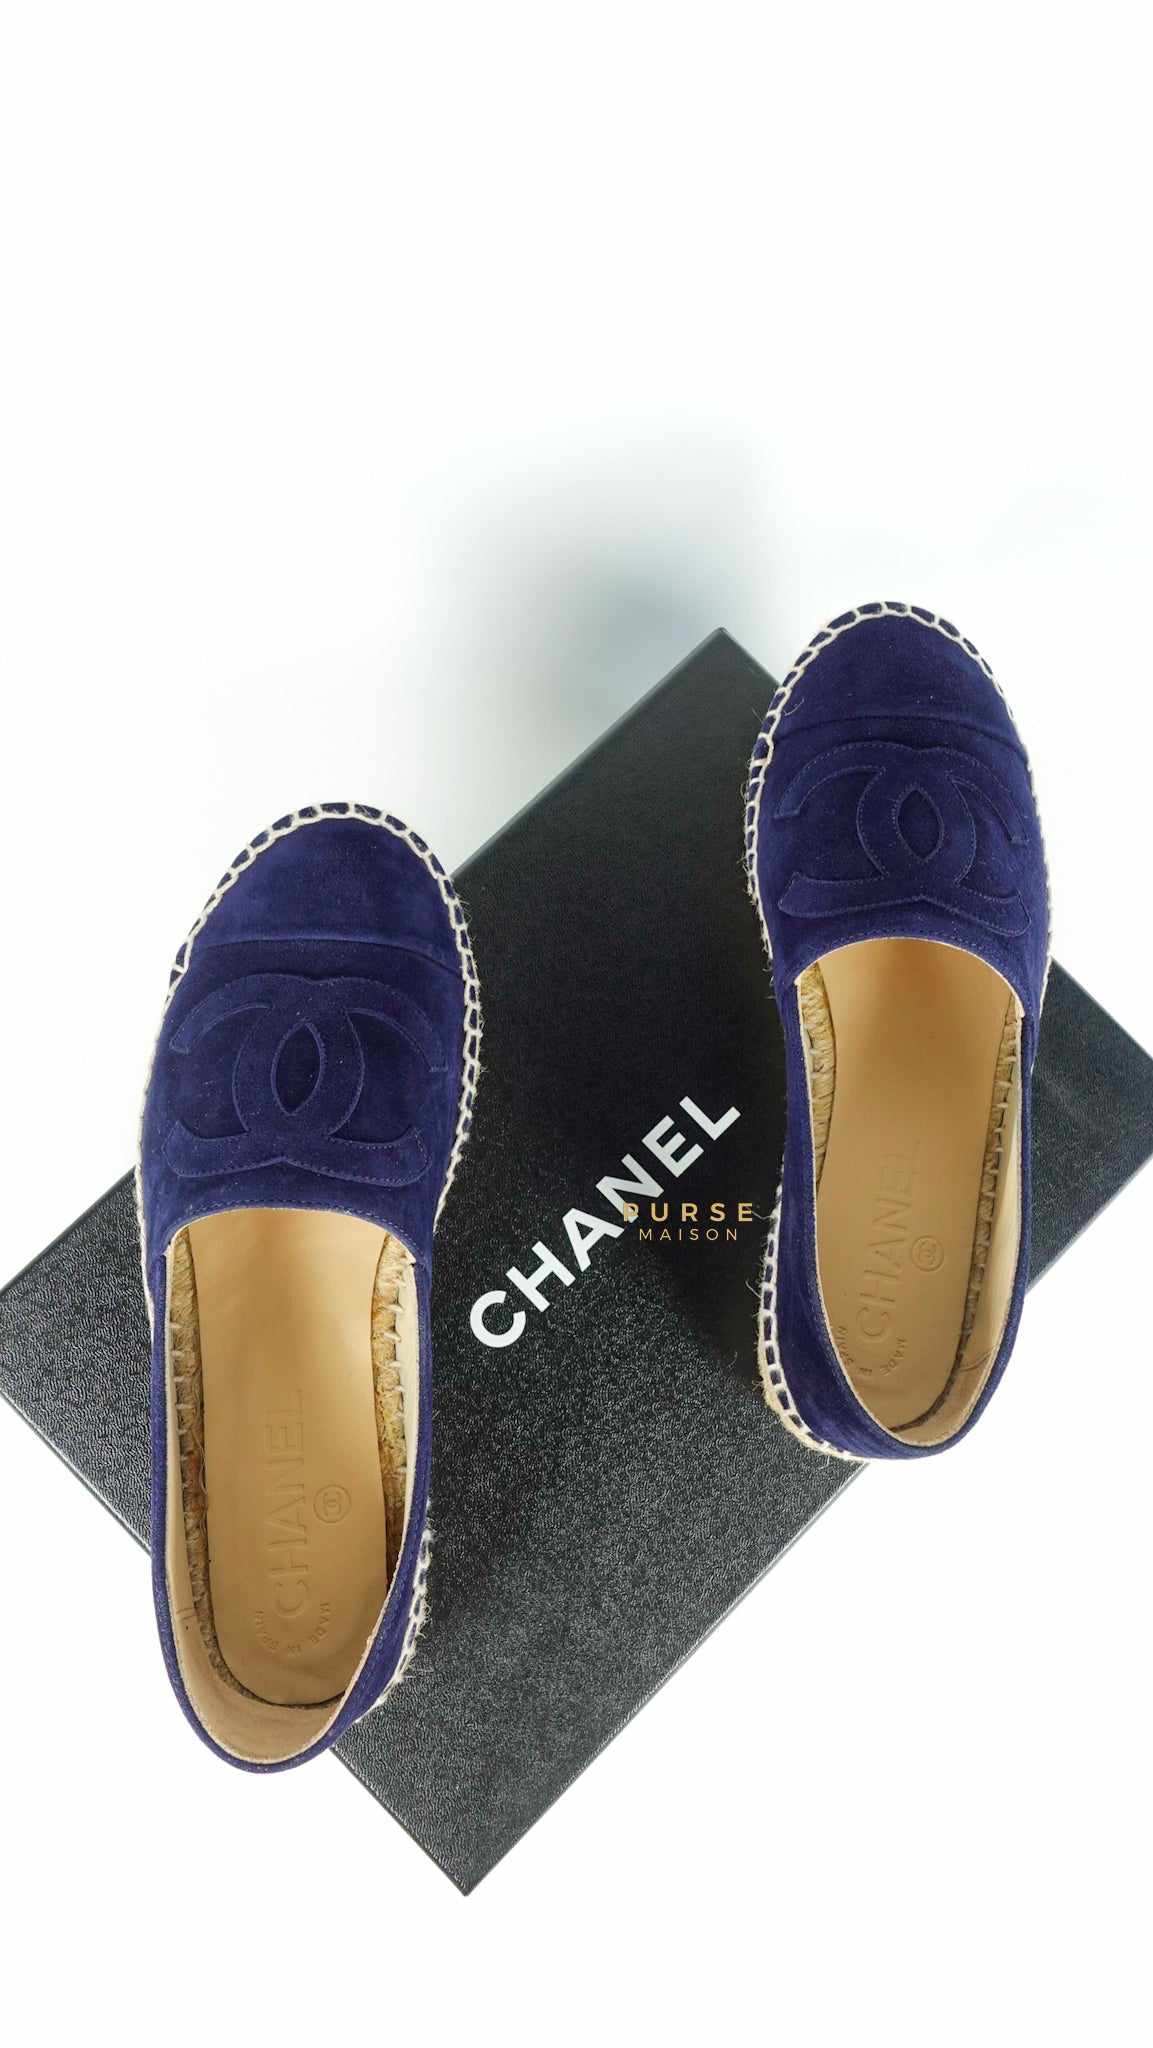 Chanel Espadrilles Suede Navy Blue Size 36 EU (22.5cm)